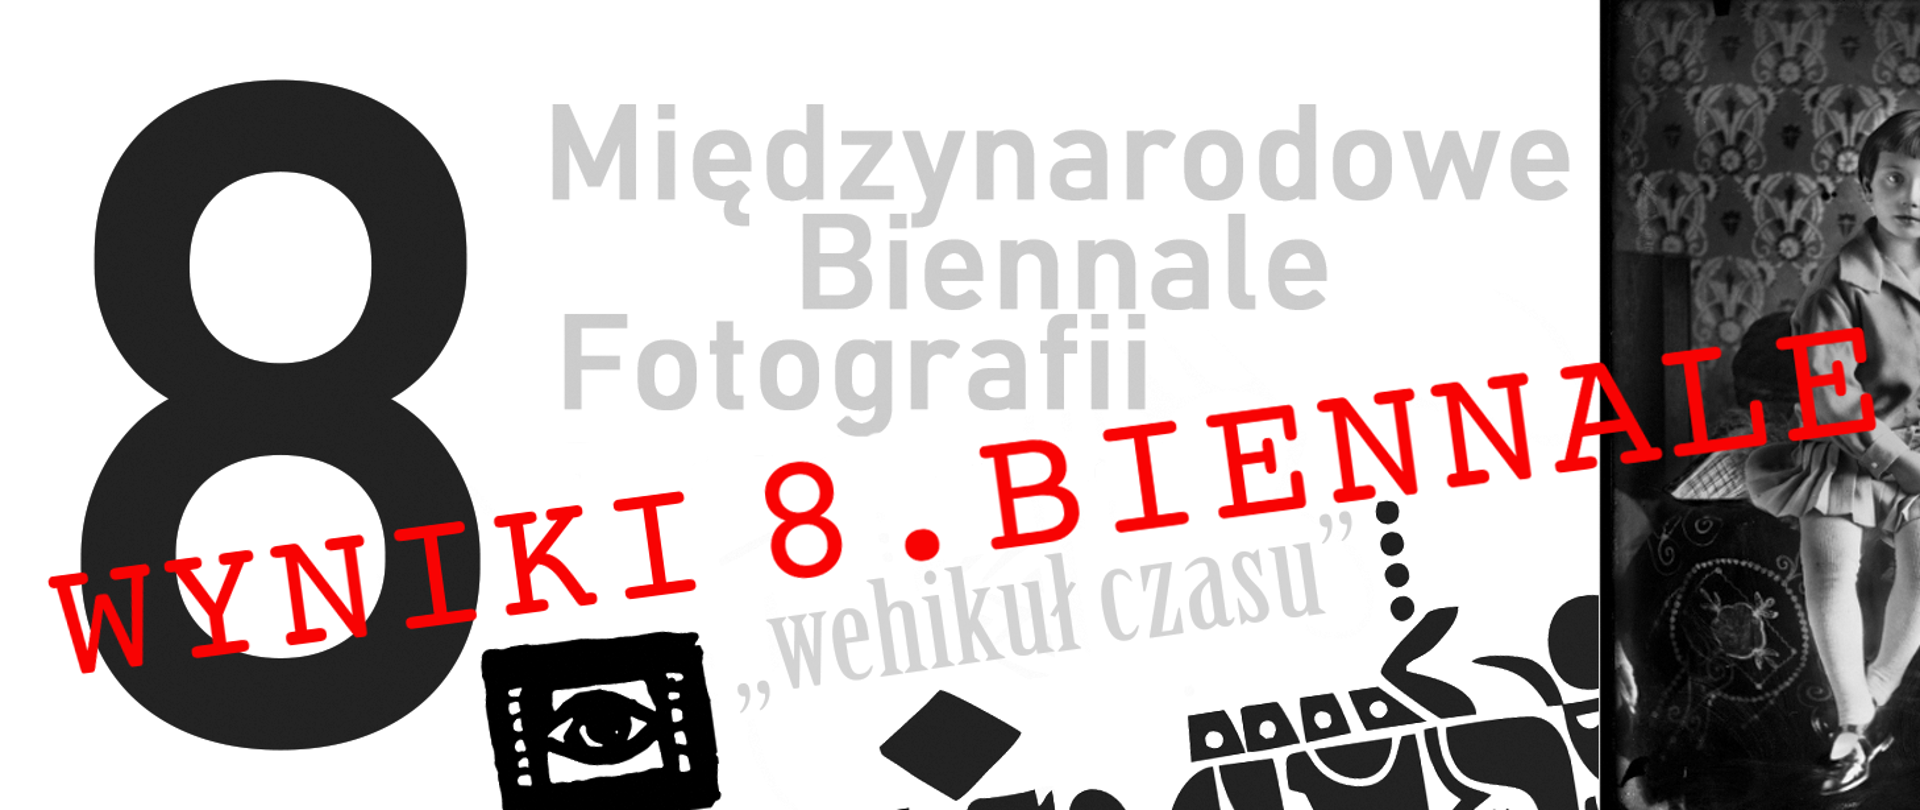 VIII Międzynarodowe Biennale Fotografii - wyniki